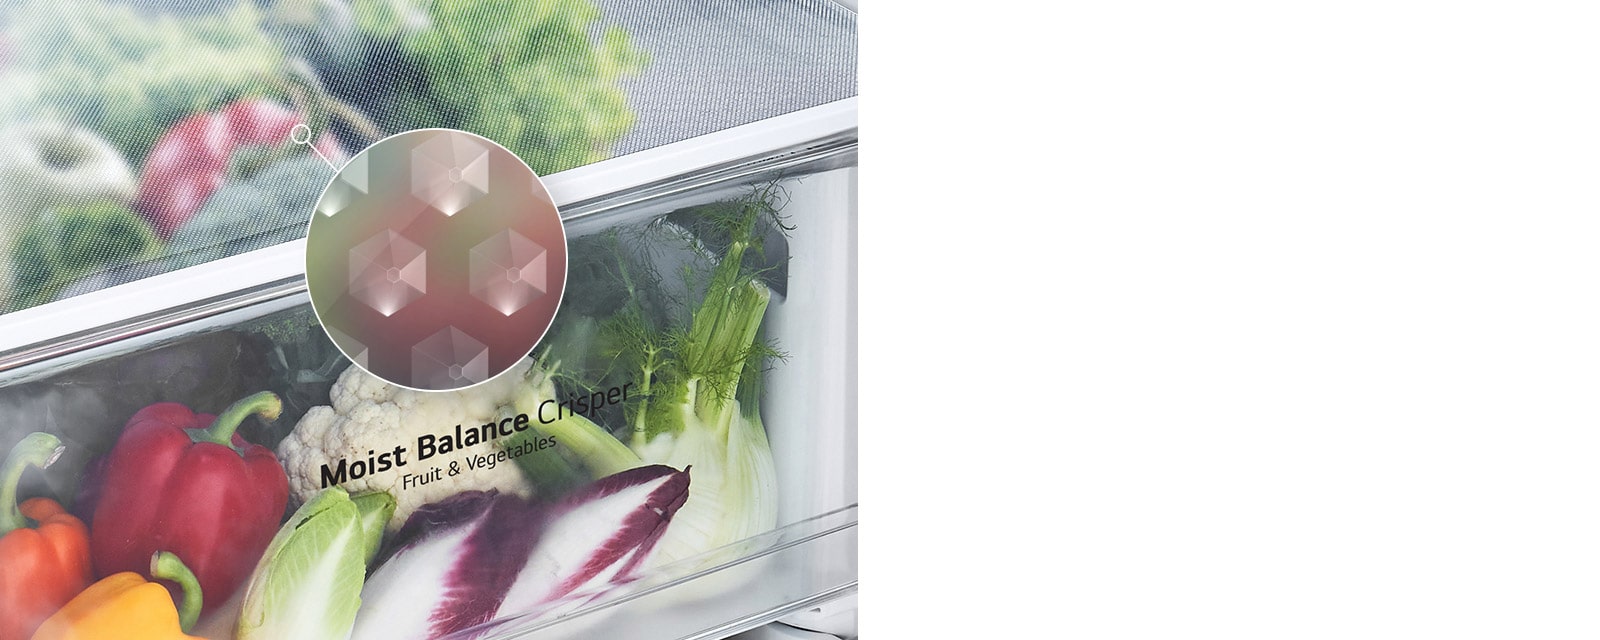 A Moist Balance Crisper fiók képe, mely tele van pakolva élelmiszerekkel és a részletnagyításban látható a bordázott felület, ami a ételek frissességének megőrzésében segít.